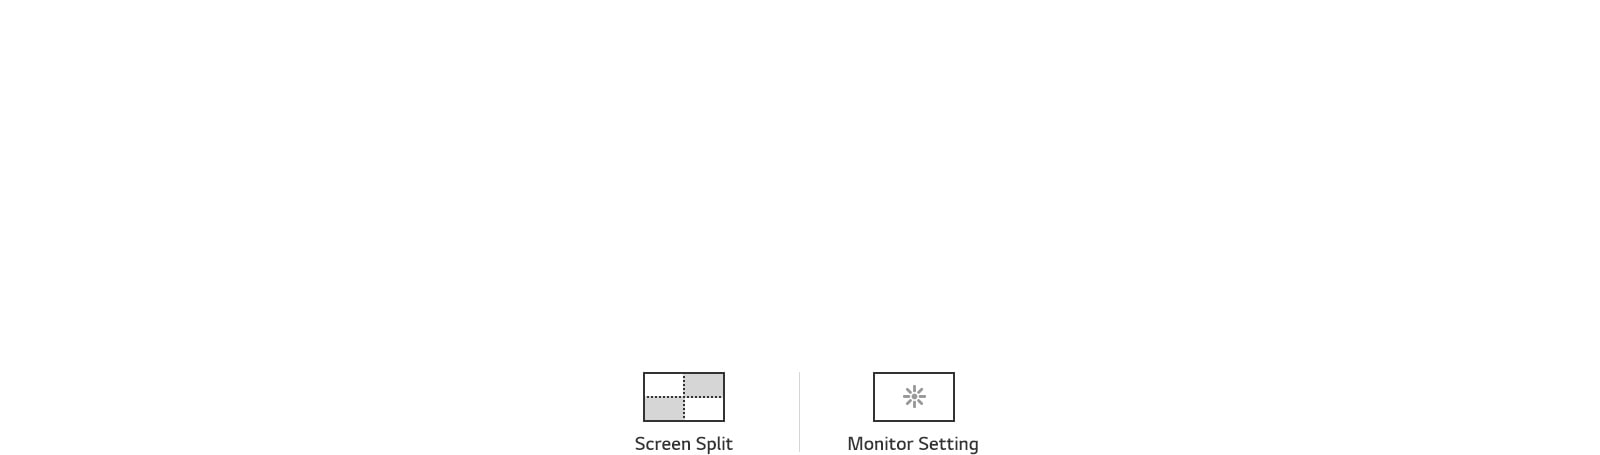 LG Monitors - Easier User Interface